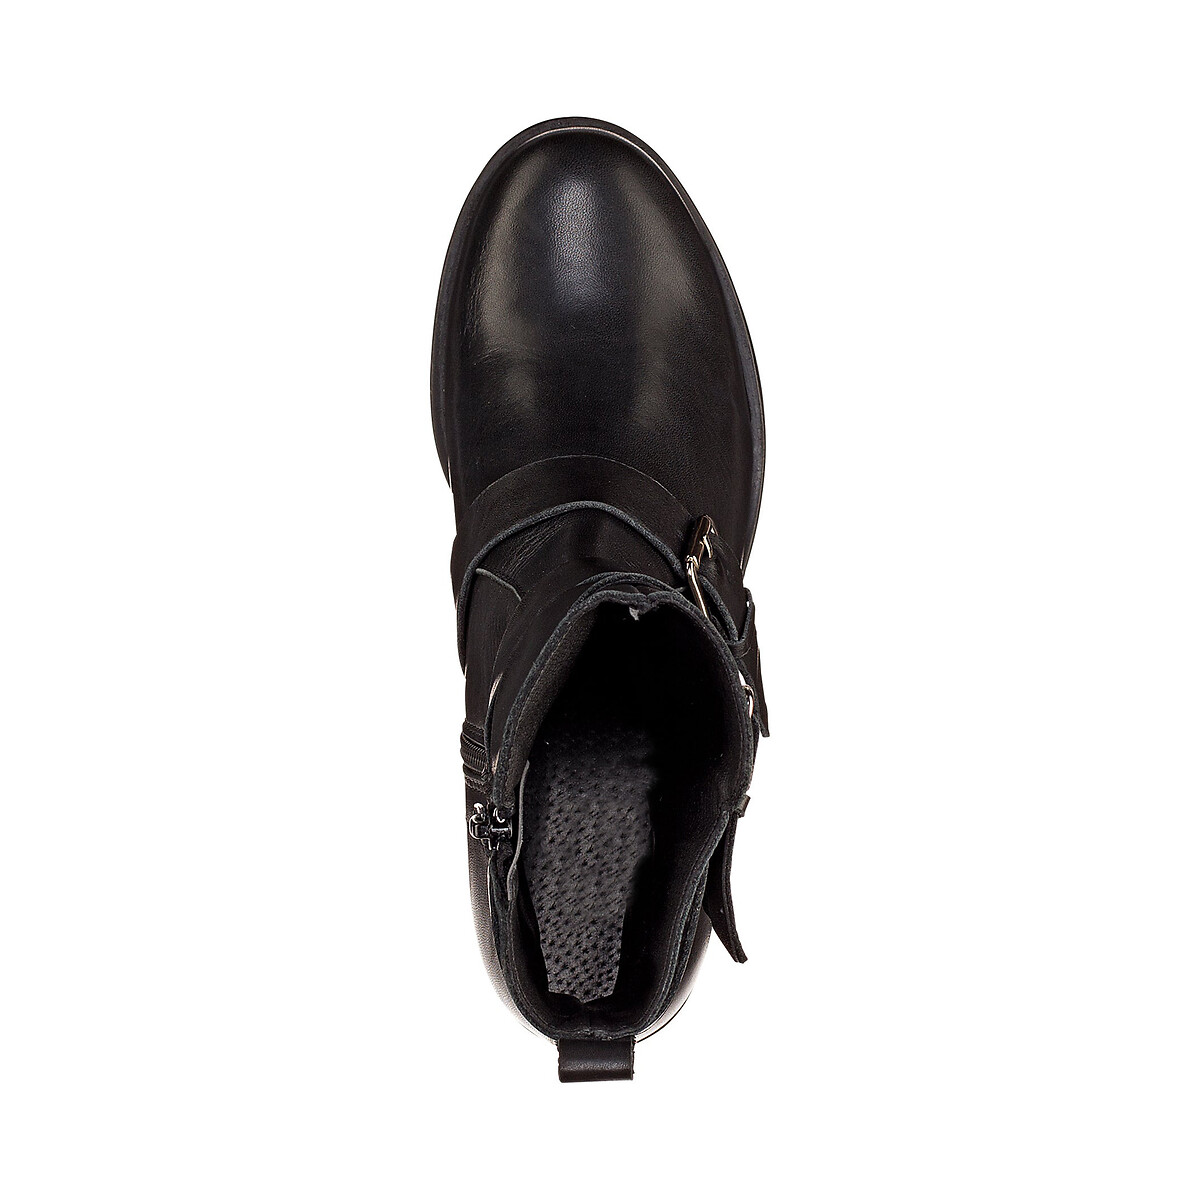 Ботинки La Redoute Кожаные в байкерском стиле 36 черный, размер 36 - фото 3